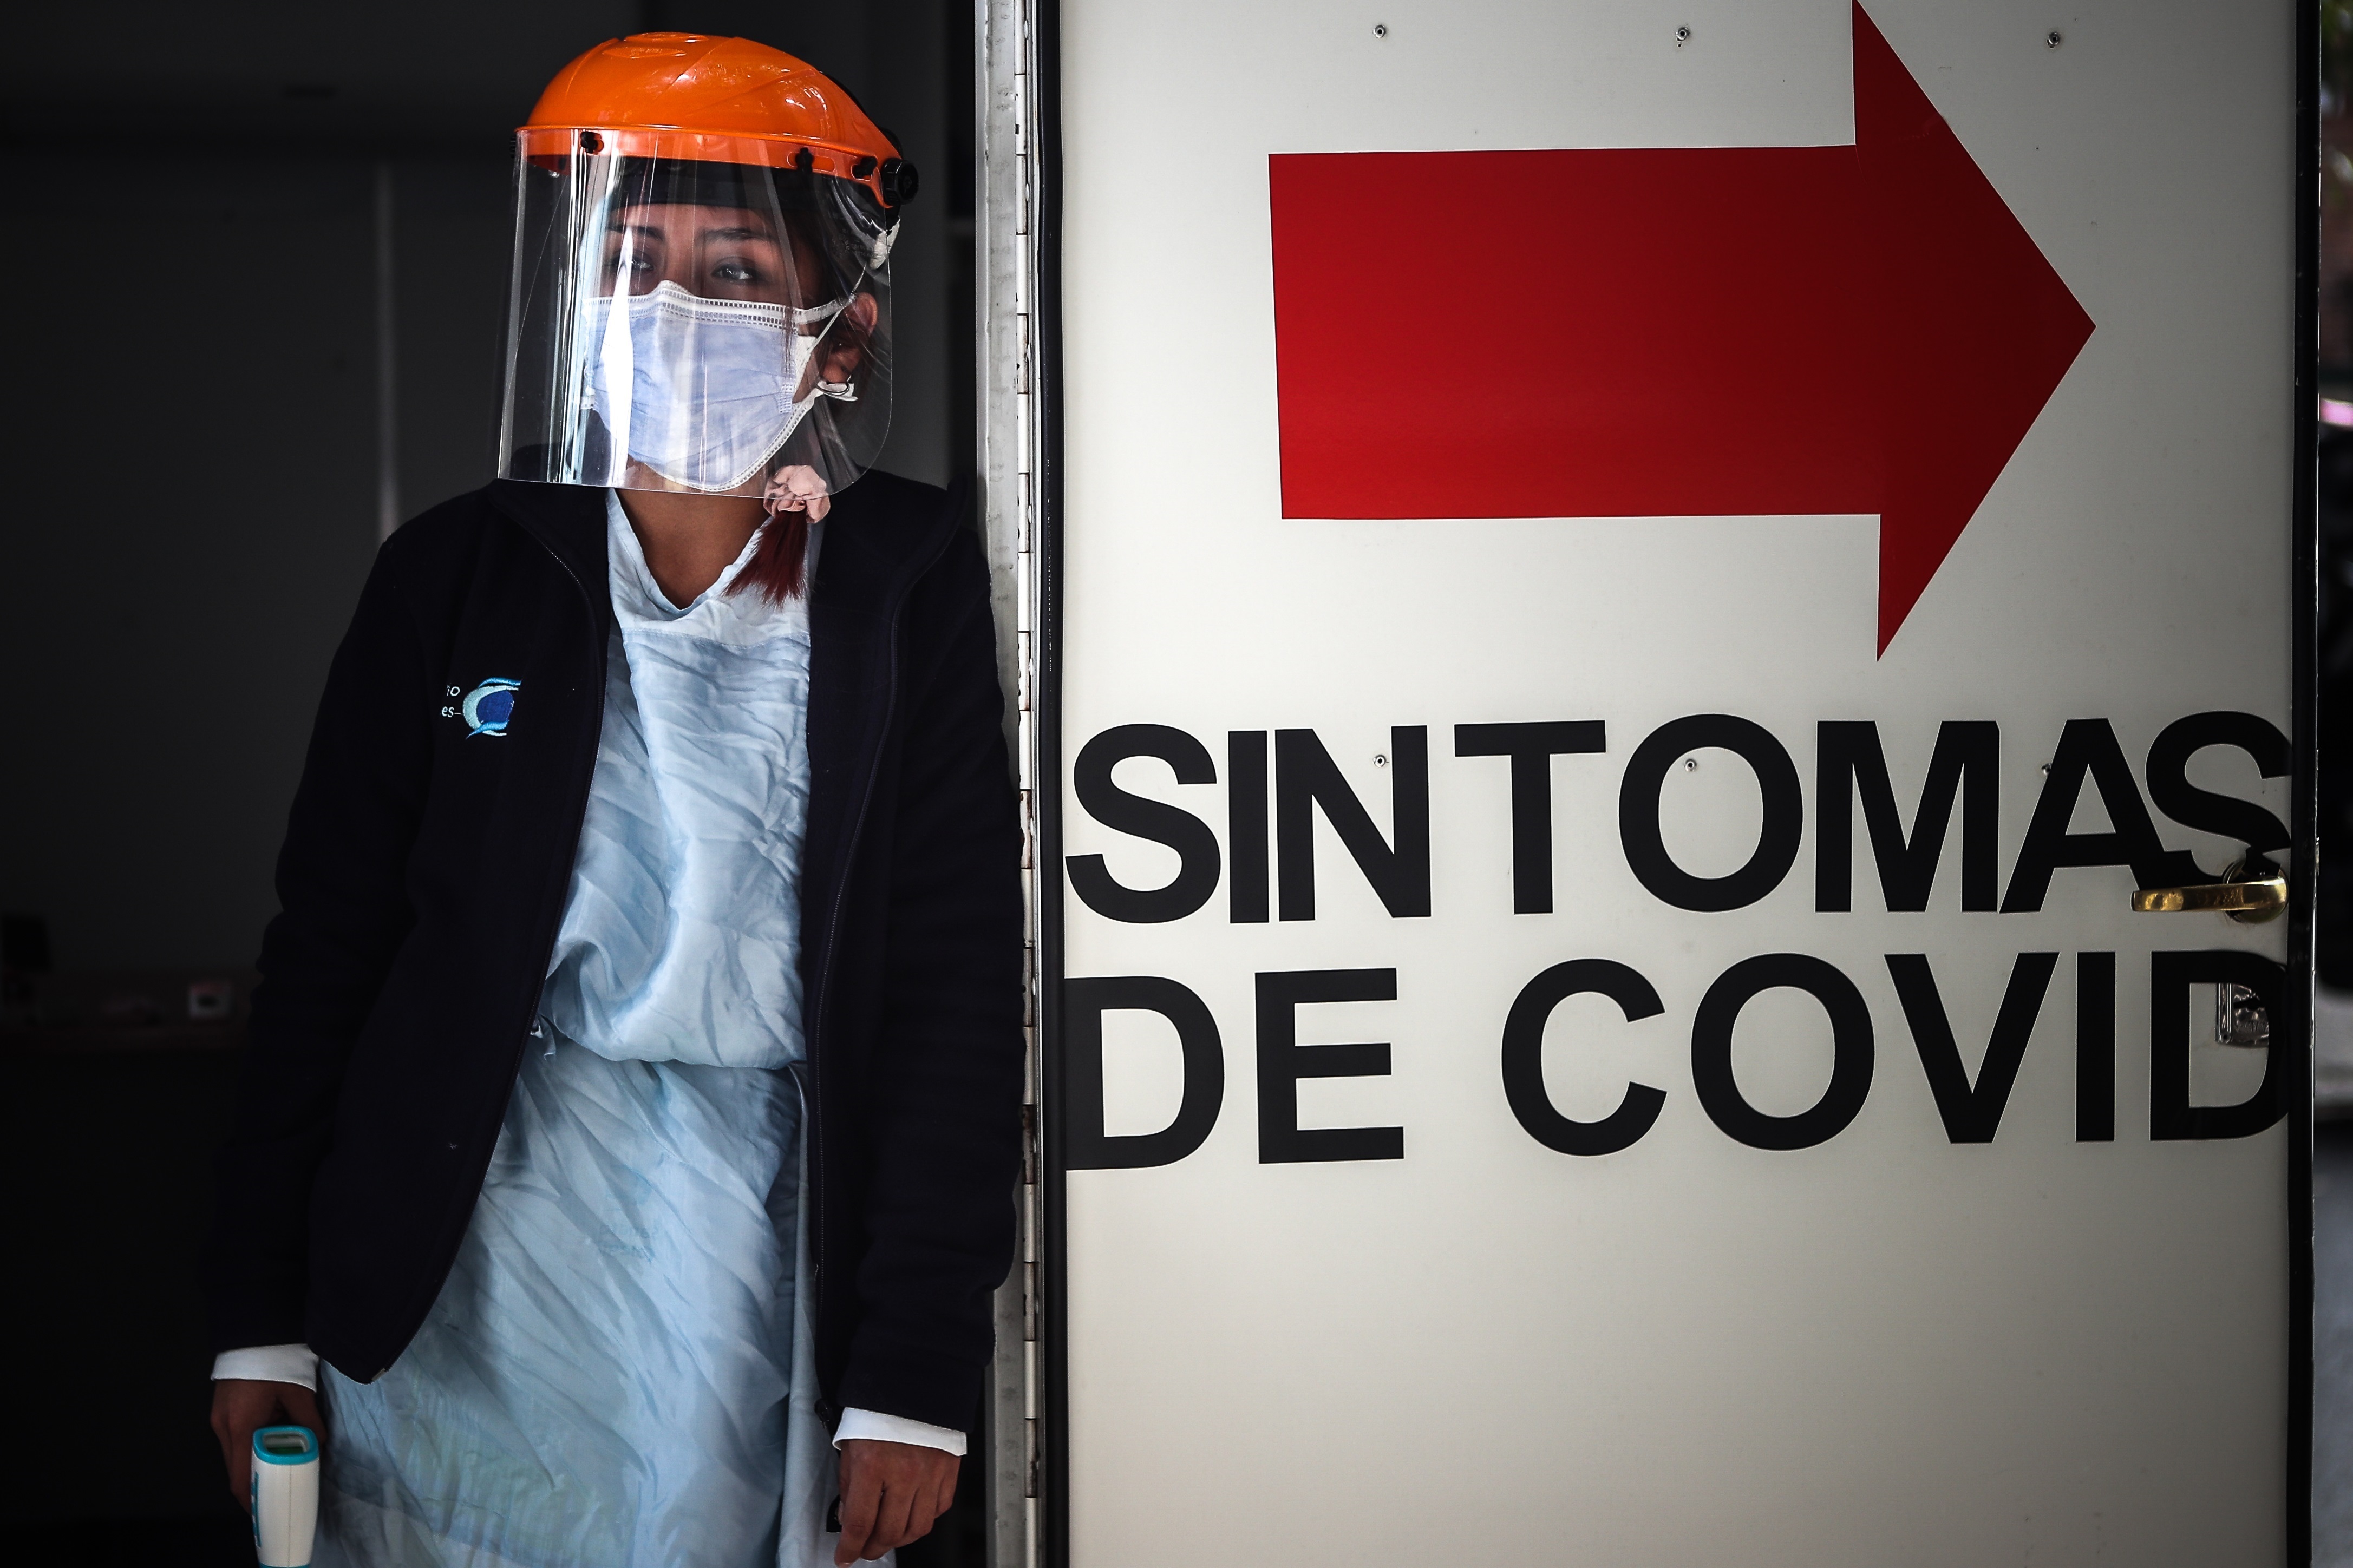 Los casos de coronavirus aumentaron en Argentina en las últimas dos semanas EFE/Juan Ignacio Roncoroni/Archivo)
